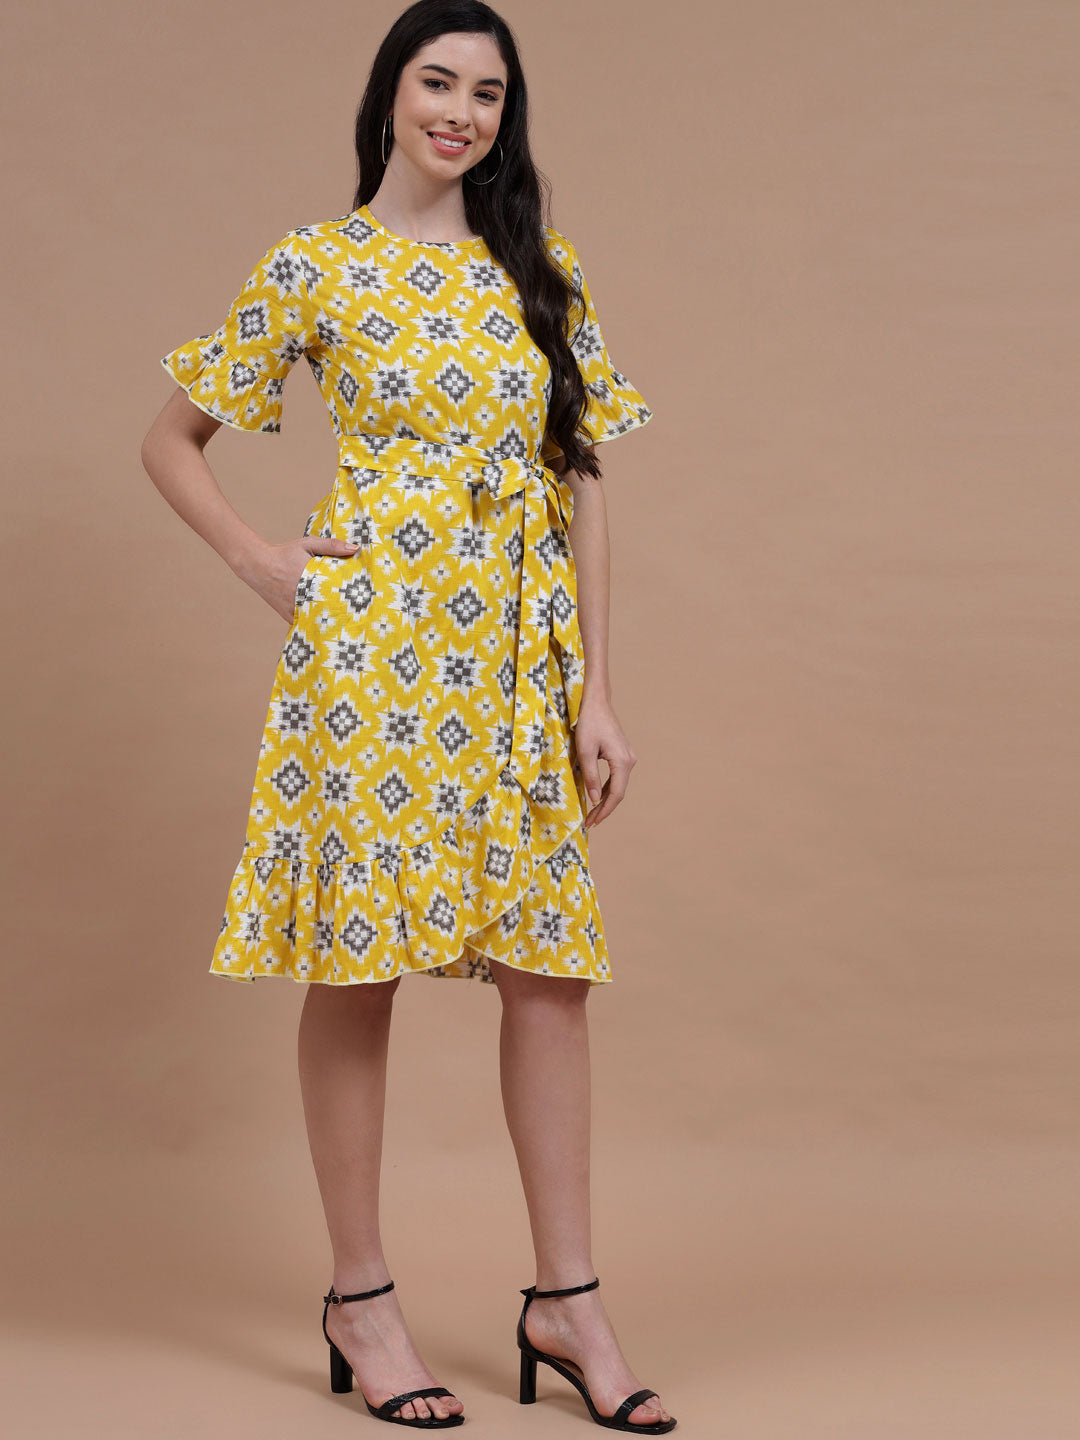 Women's Ruffle Dress - Bumblebee Printed Ruffle Dress#3